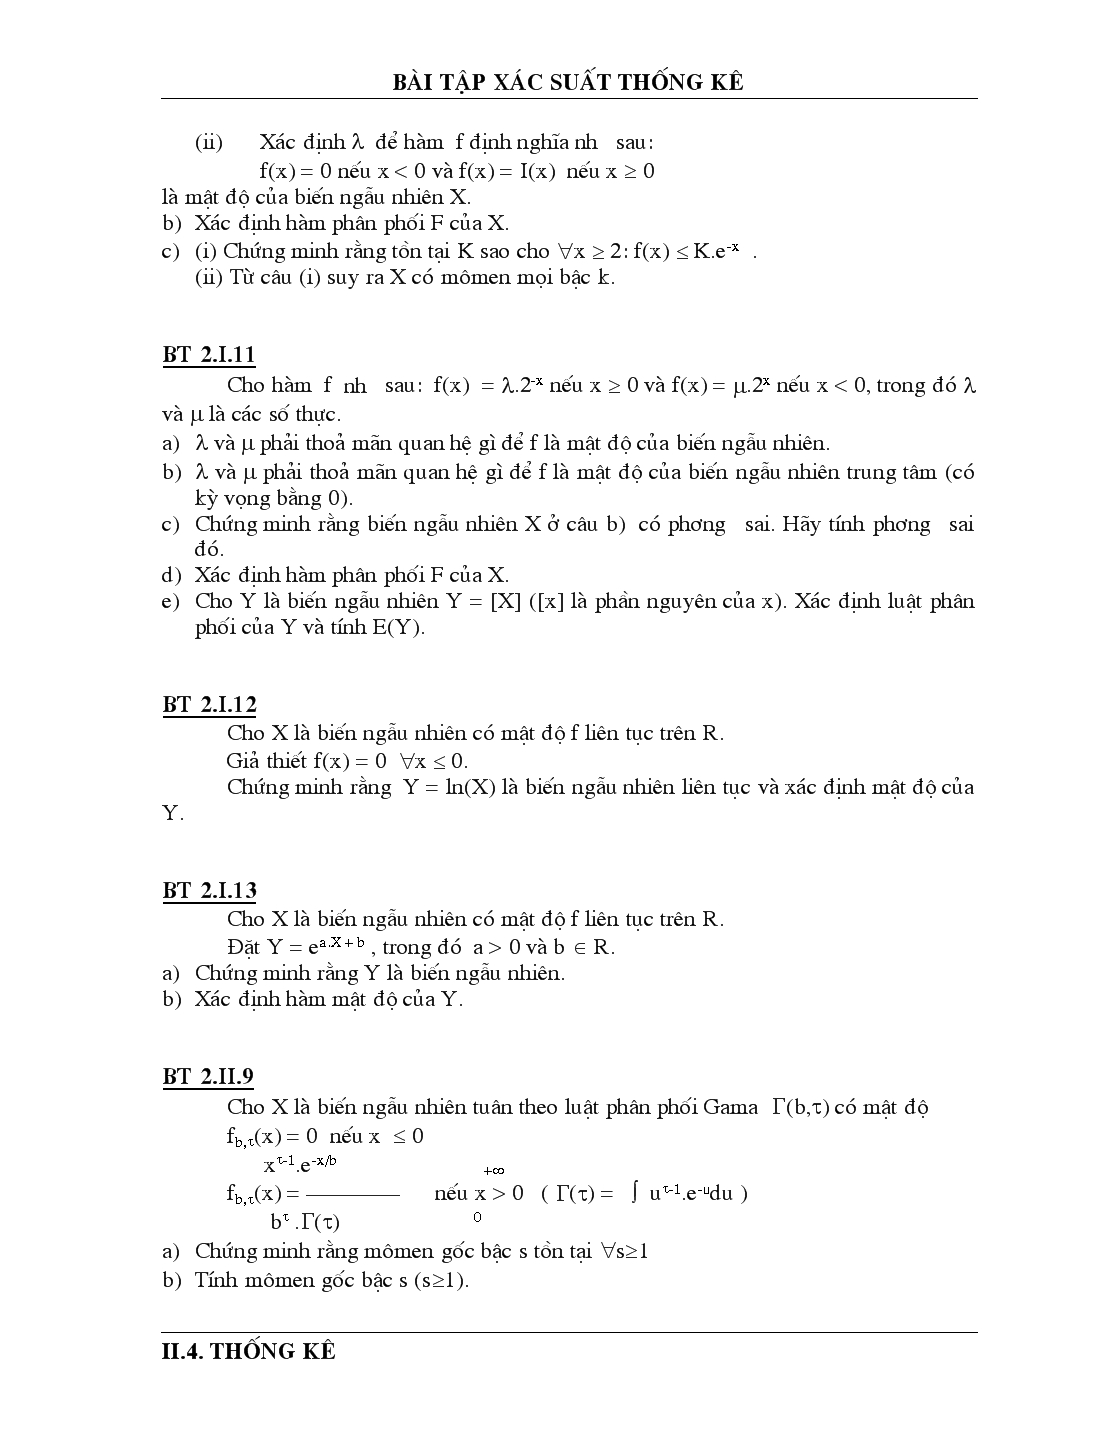 Bài tập về xác suất thống kê trang 3